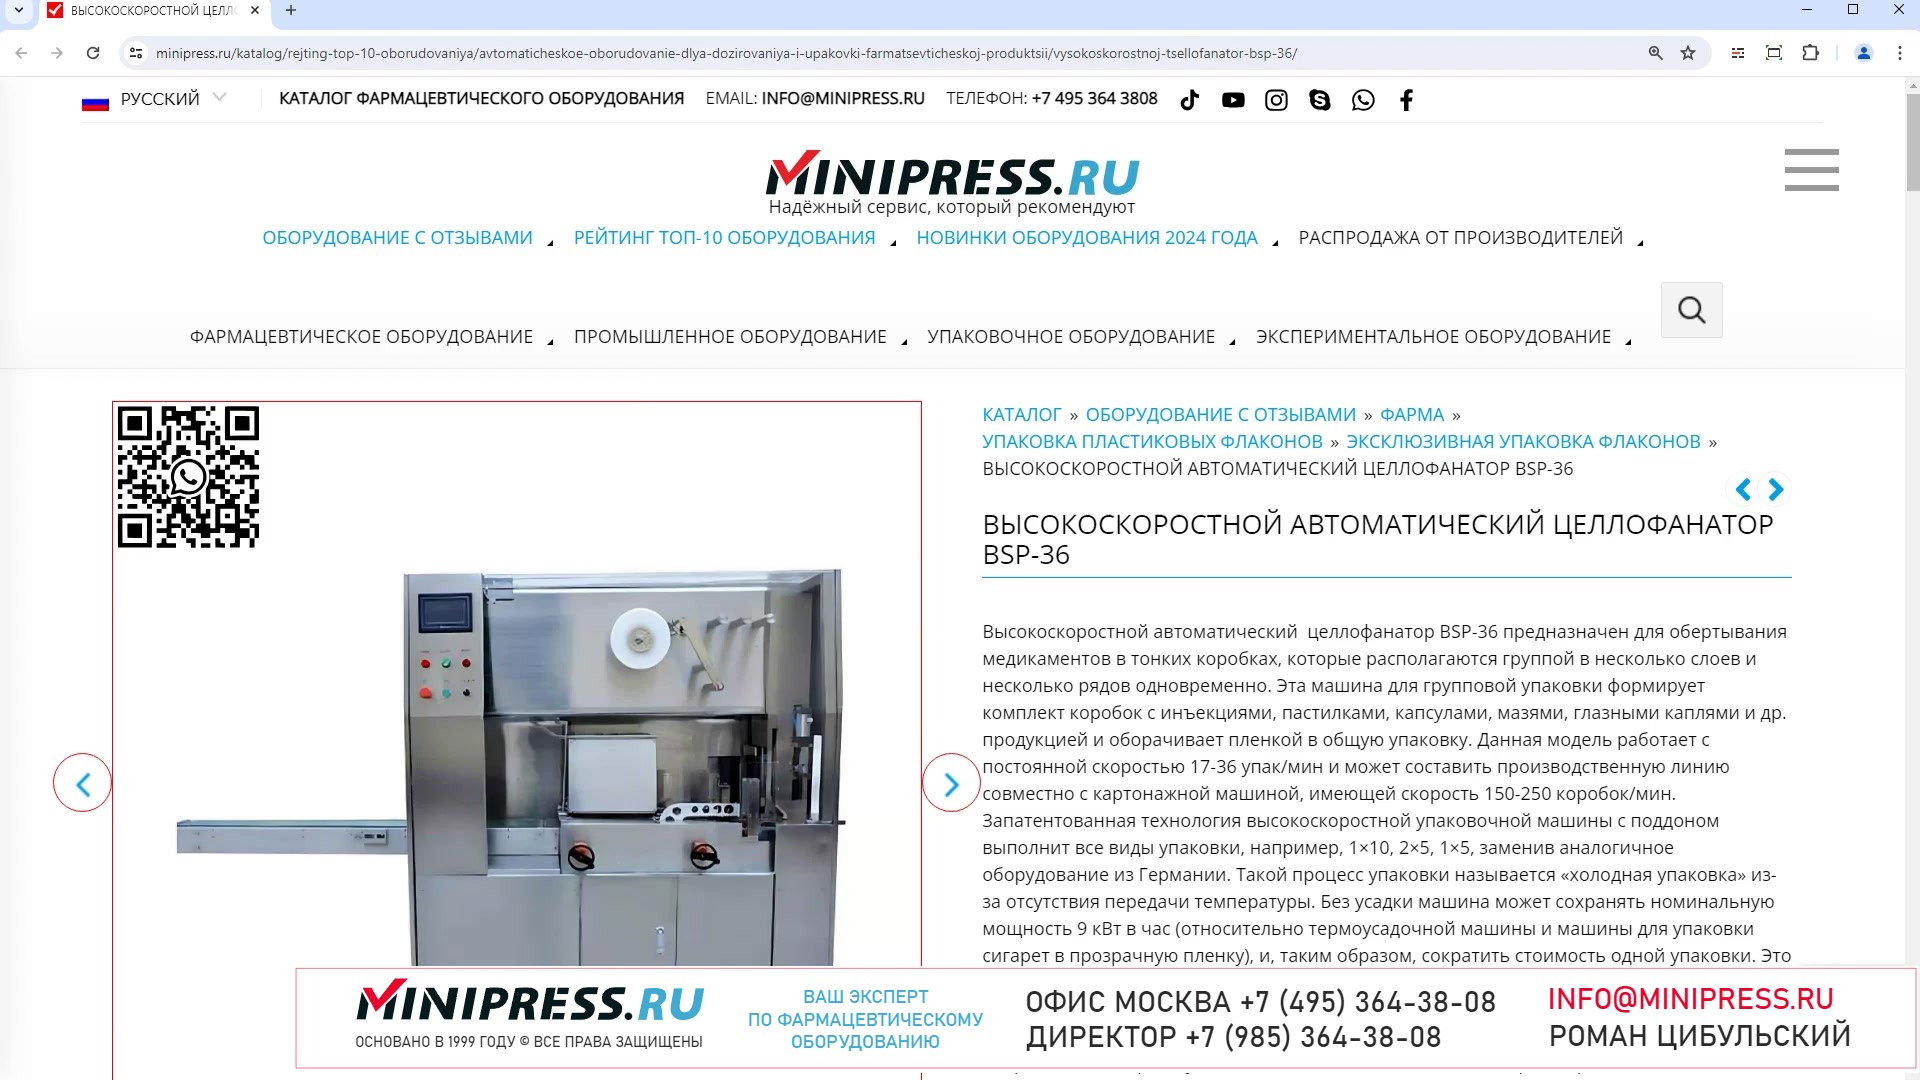 Minipress.ru Высокоскоростной автоматический целлофанатор BSP-36